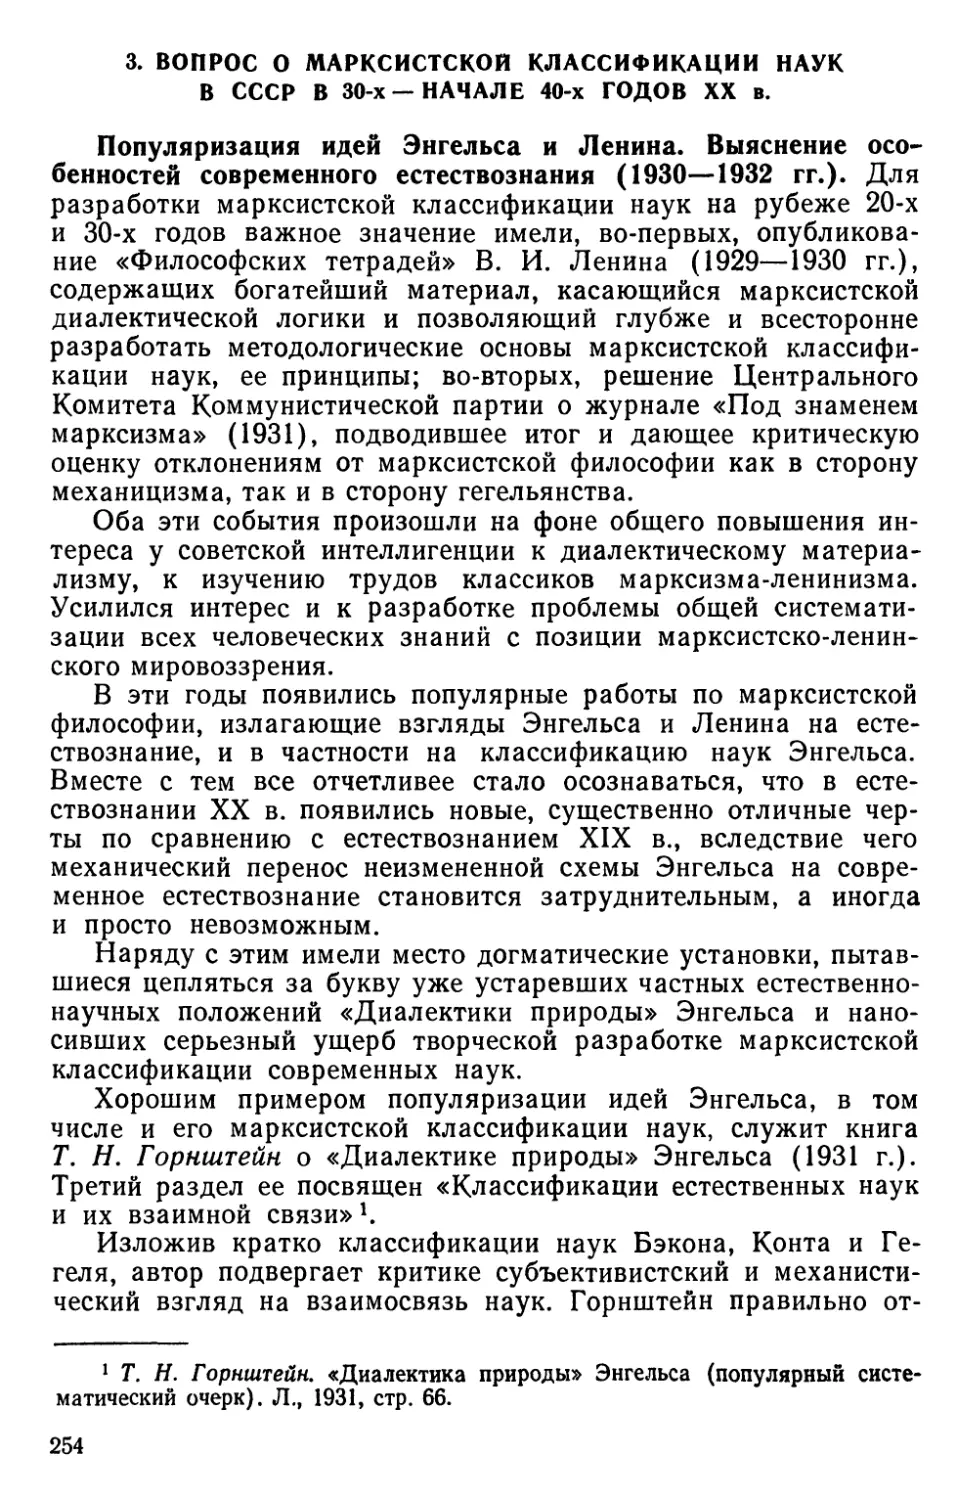 3. Вопрос о марксистской классификации наук в СССР в 30-х — начале 40-х годов XX в.